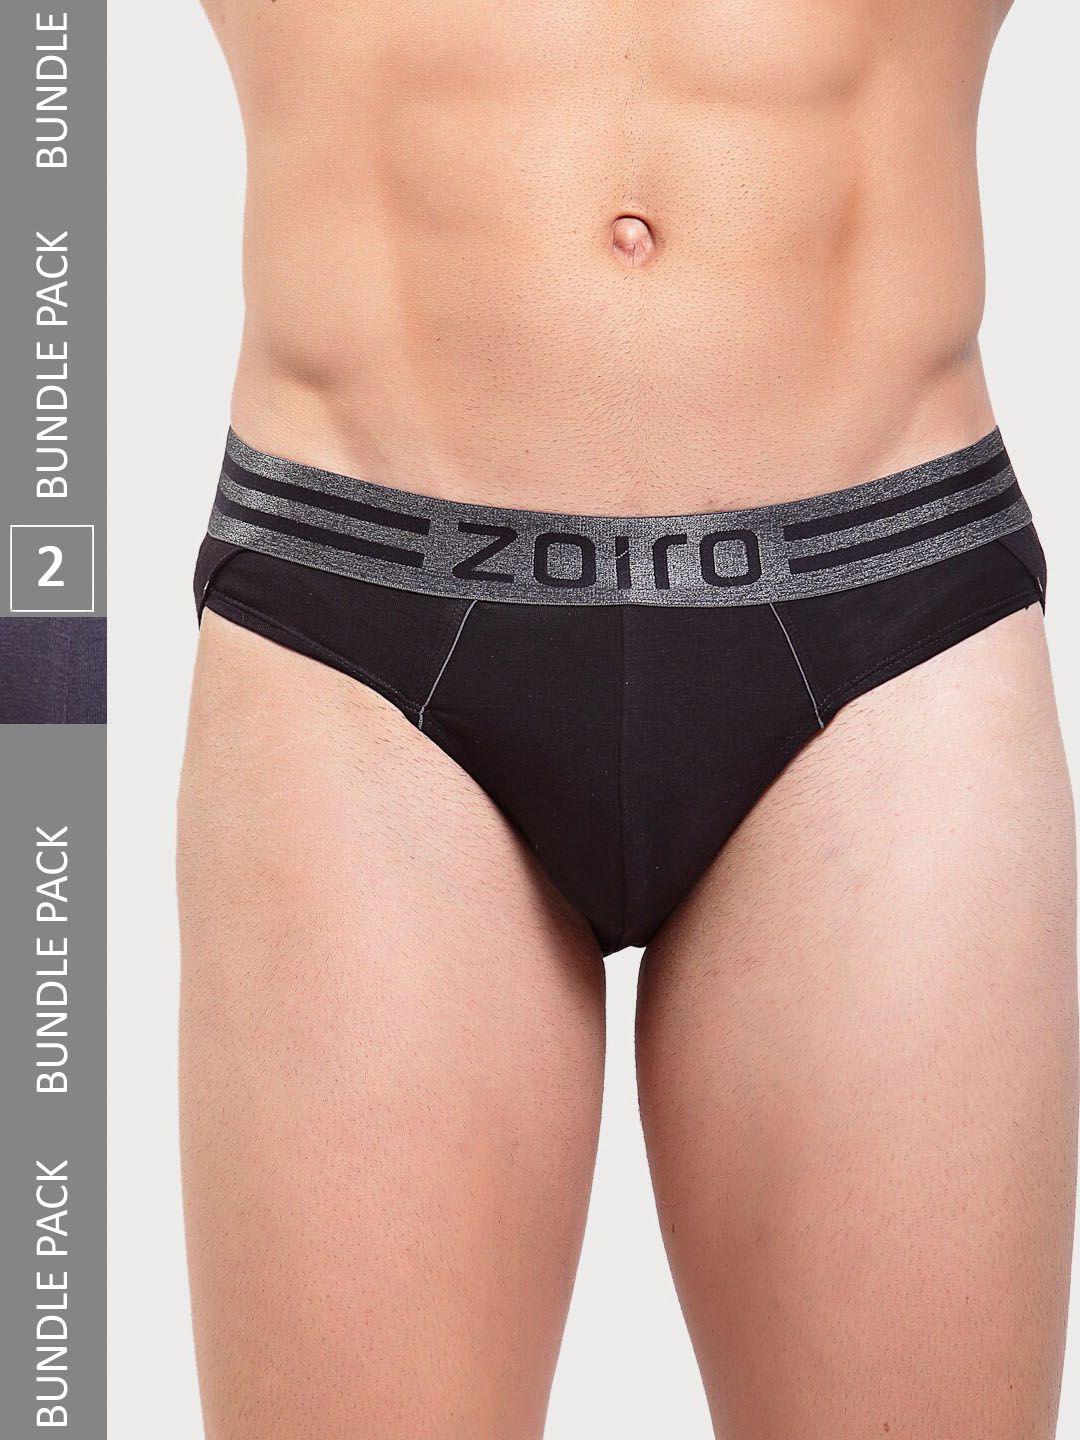 zoiro-men-pack-of-2-basic-briefs-sports-brief-513